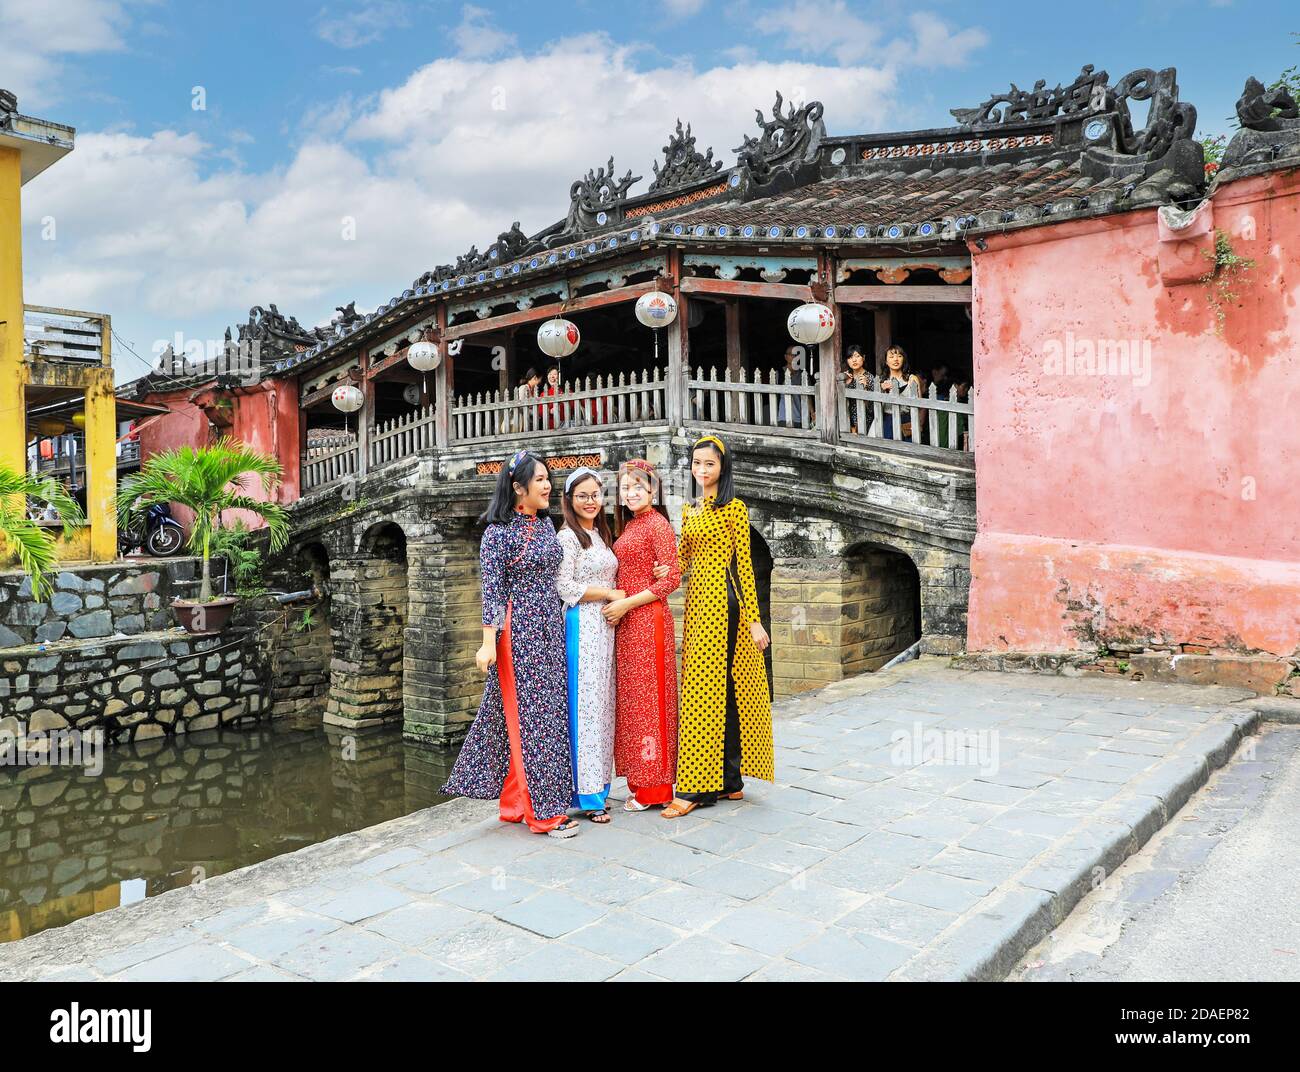 Vier vietnamesische junge Damen in traditioneller Kleidung, die Ao dai, posieren für ein Foto an der japanischen überdachten Brücke, Hoi an, Vietnam, Asien Stockfoto